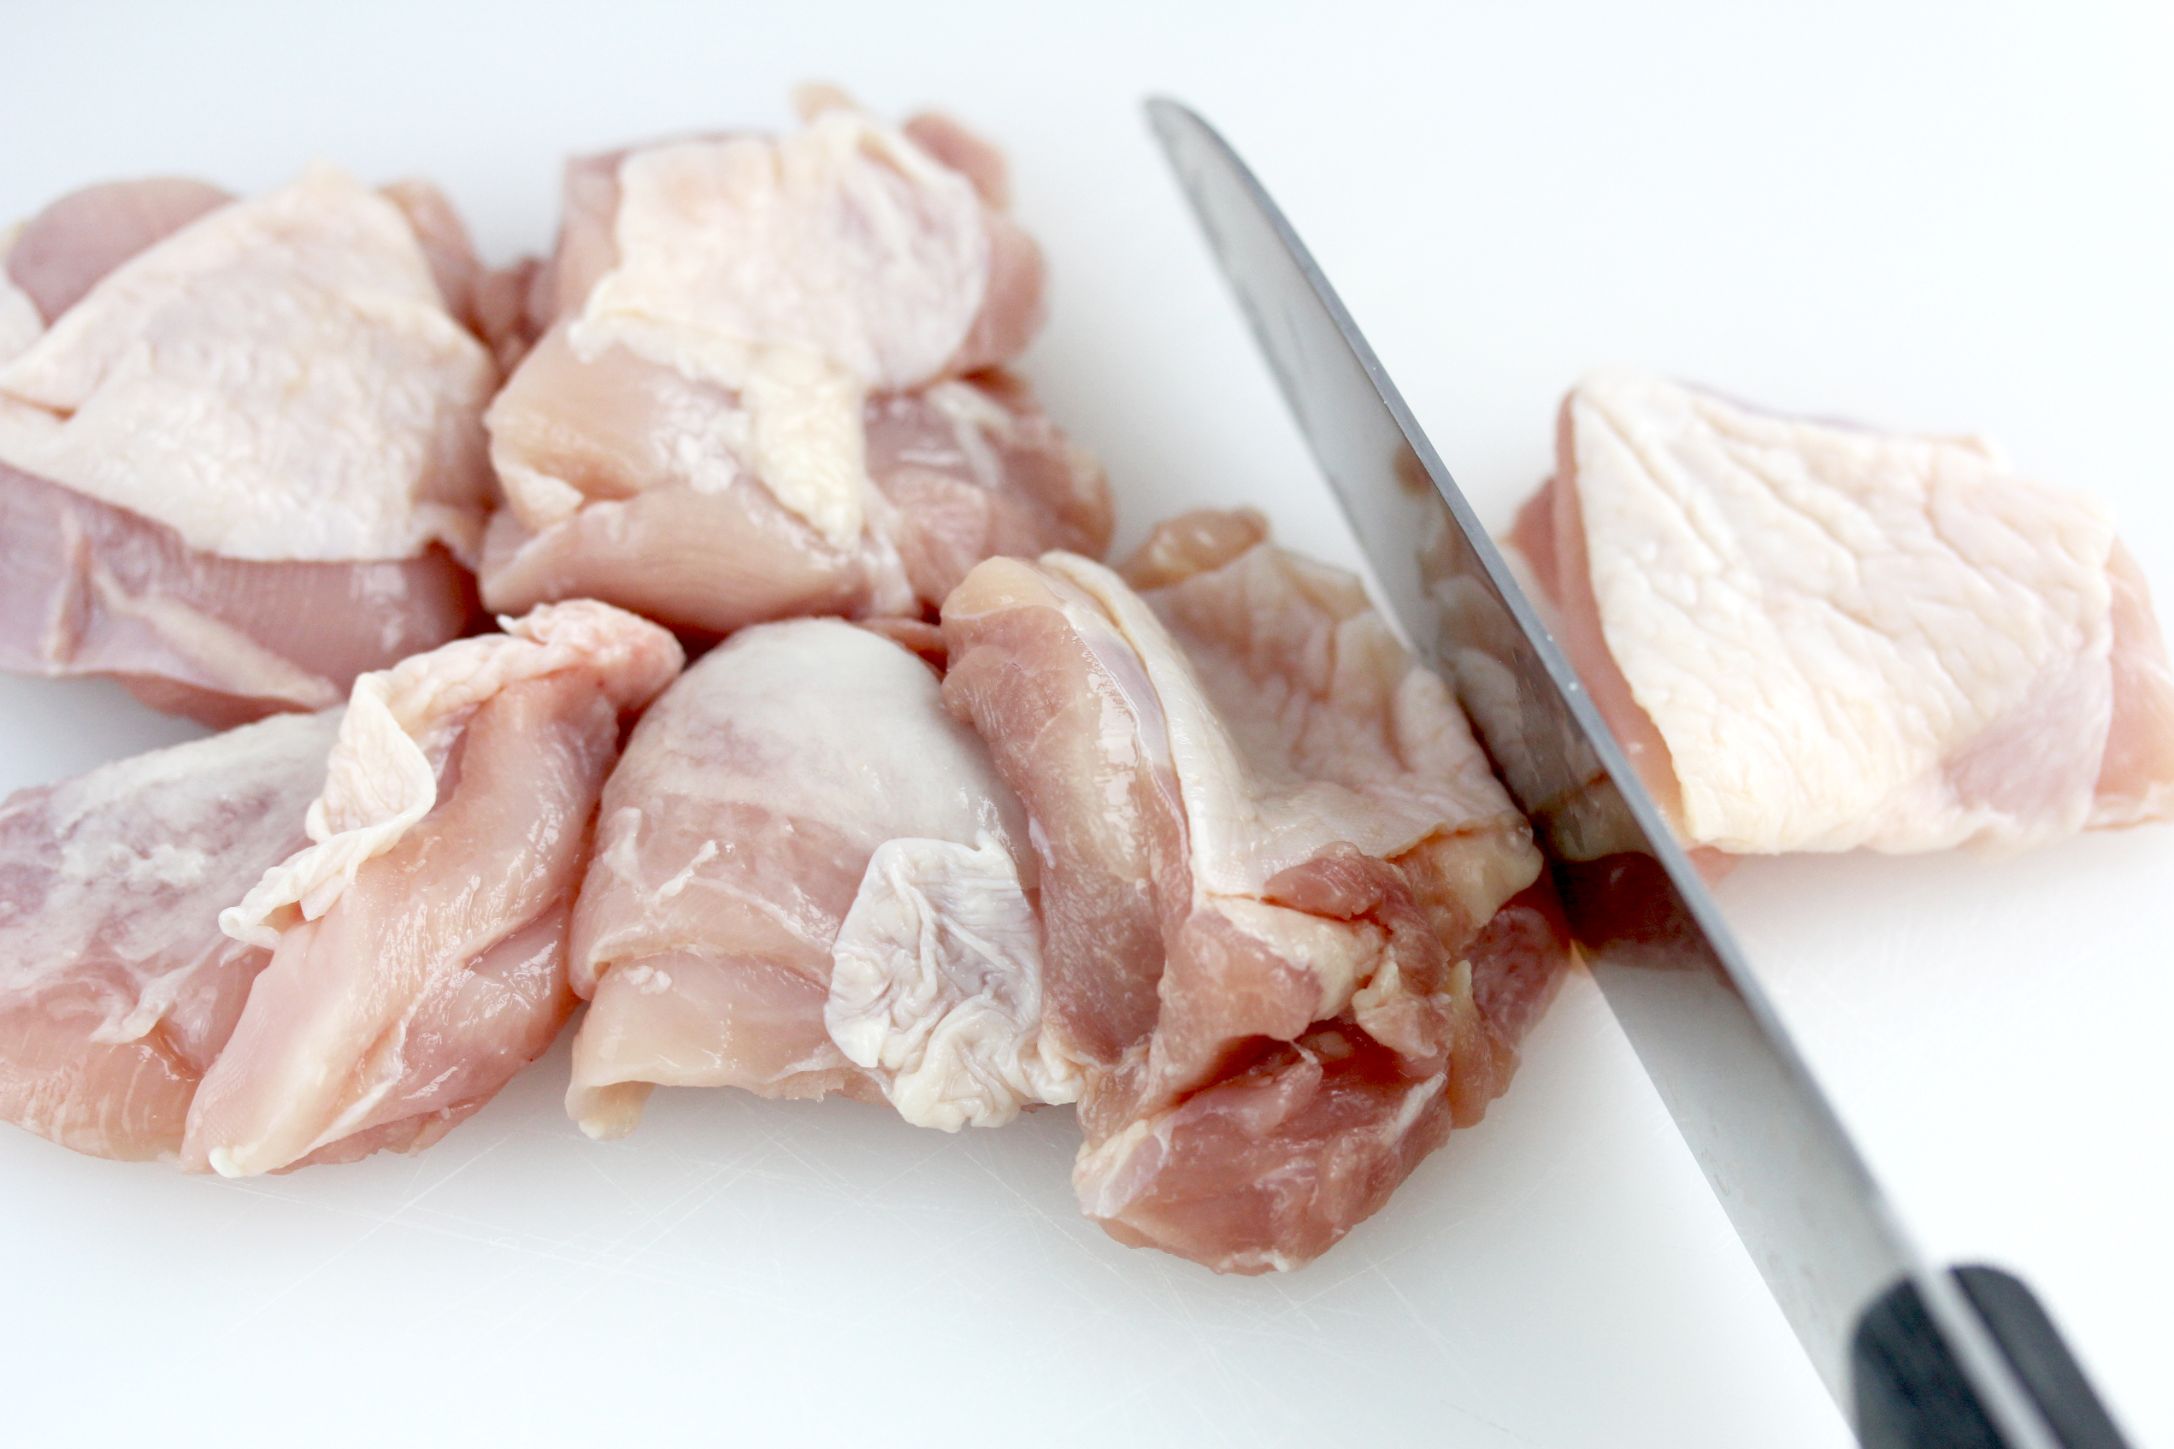 鶏もも肉は筋や脂を取り除き、ひと口大に切る。長芋は厚さ1cmの半月切りにする。